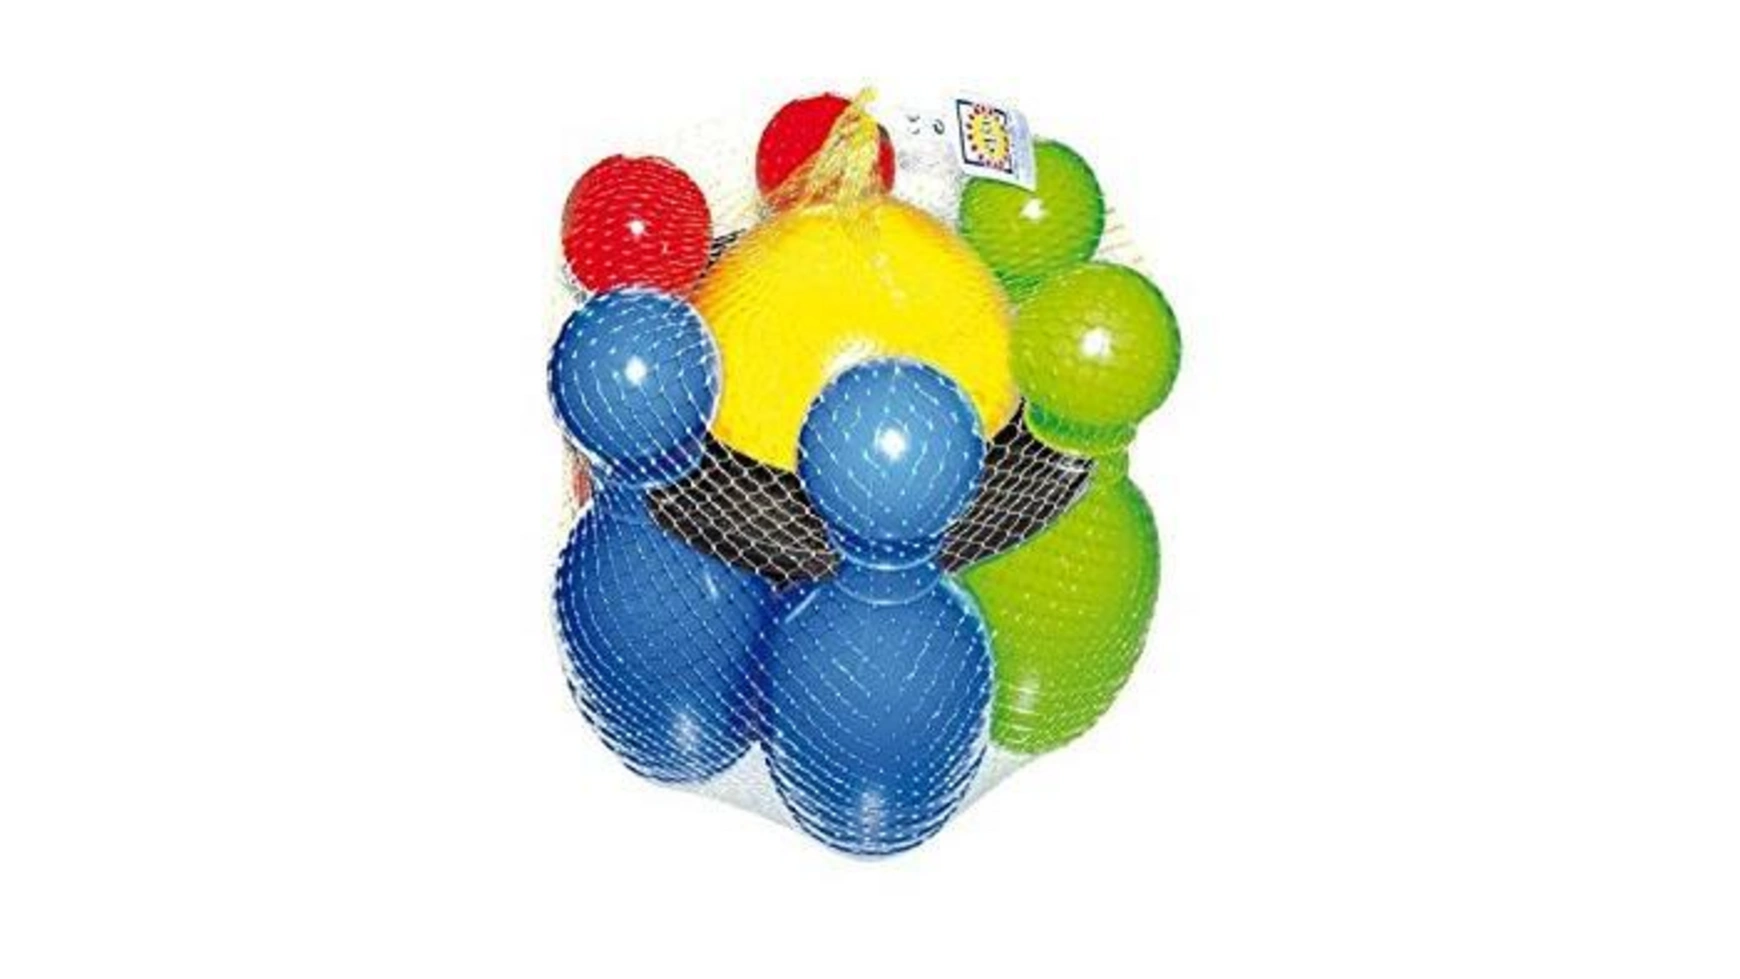 Frabar Кегли игровые 31 см, 6 кеглей kg0725 набор для боулинга радуга 6 кеглей шар в сетке colorplast